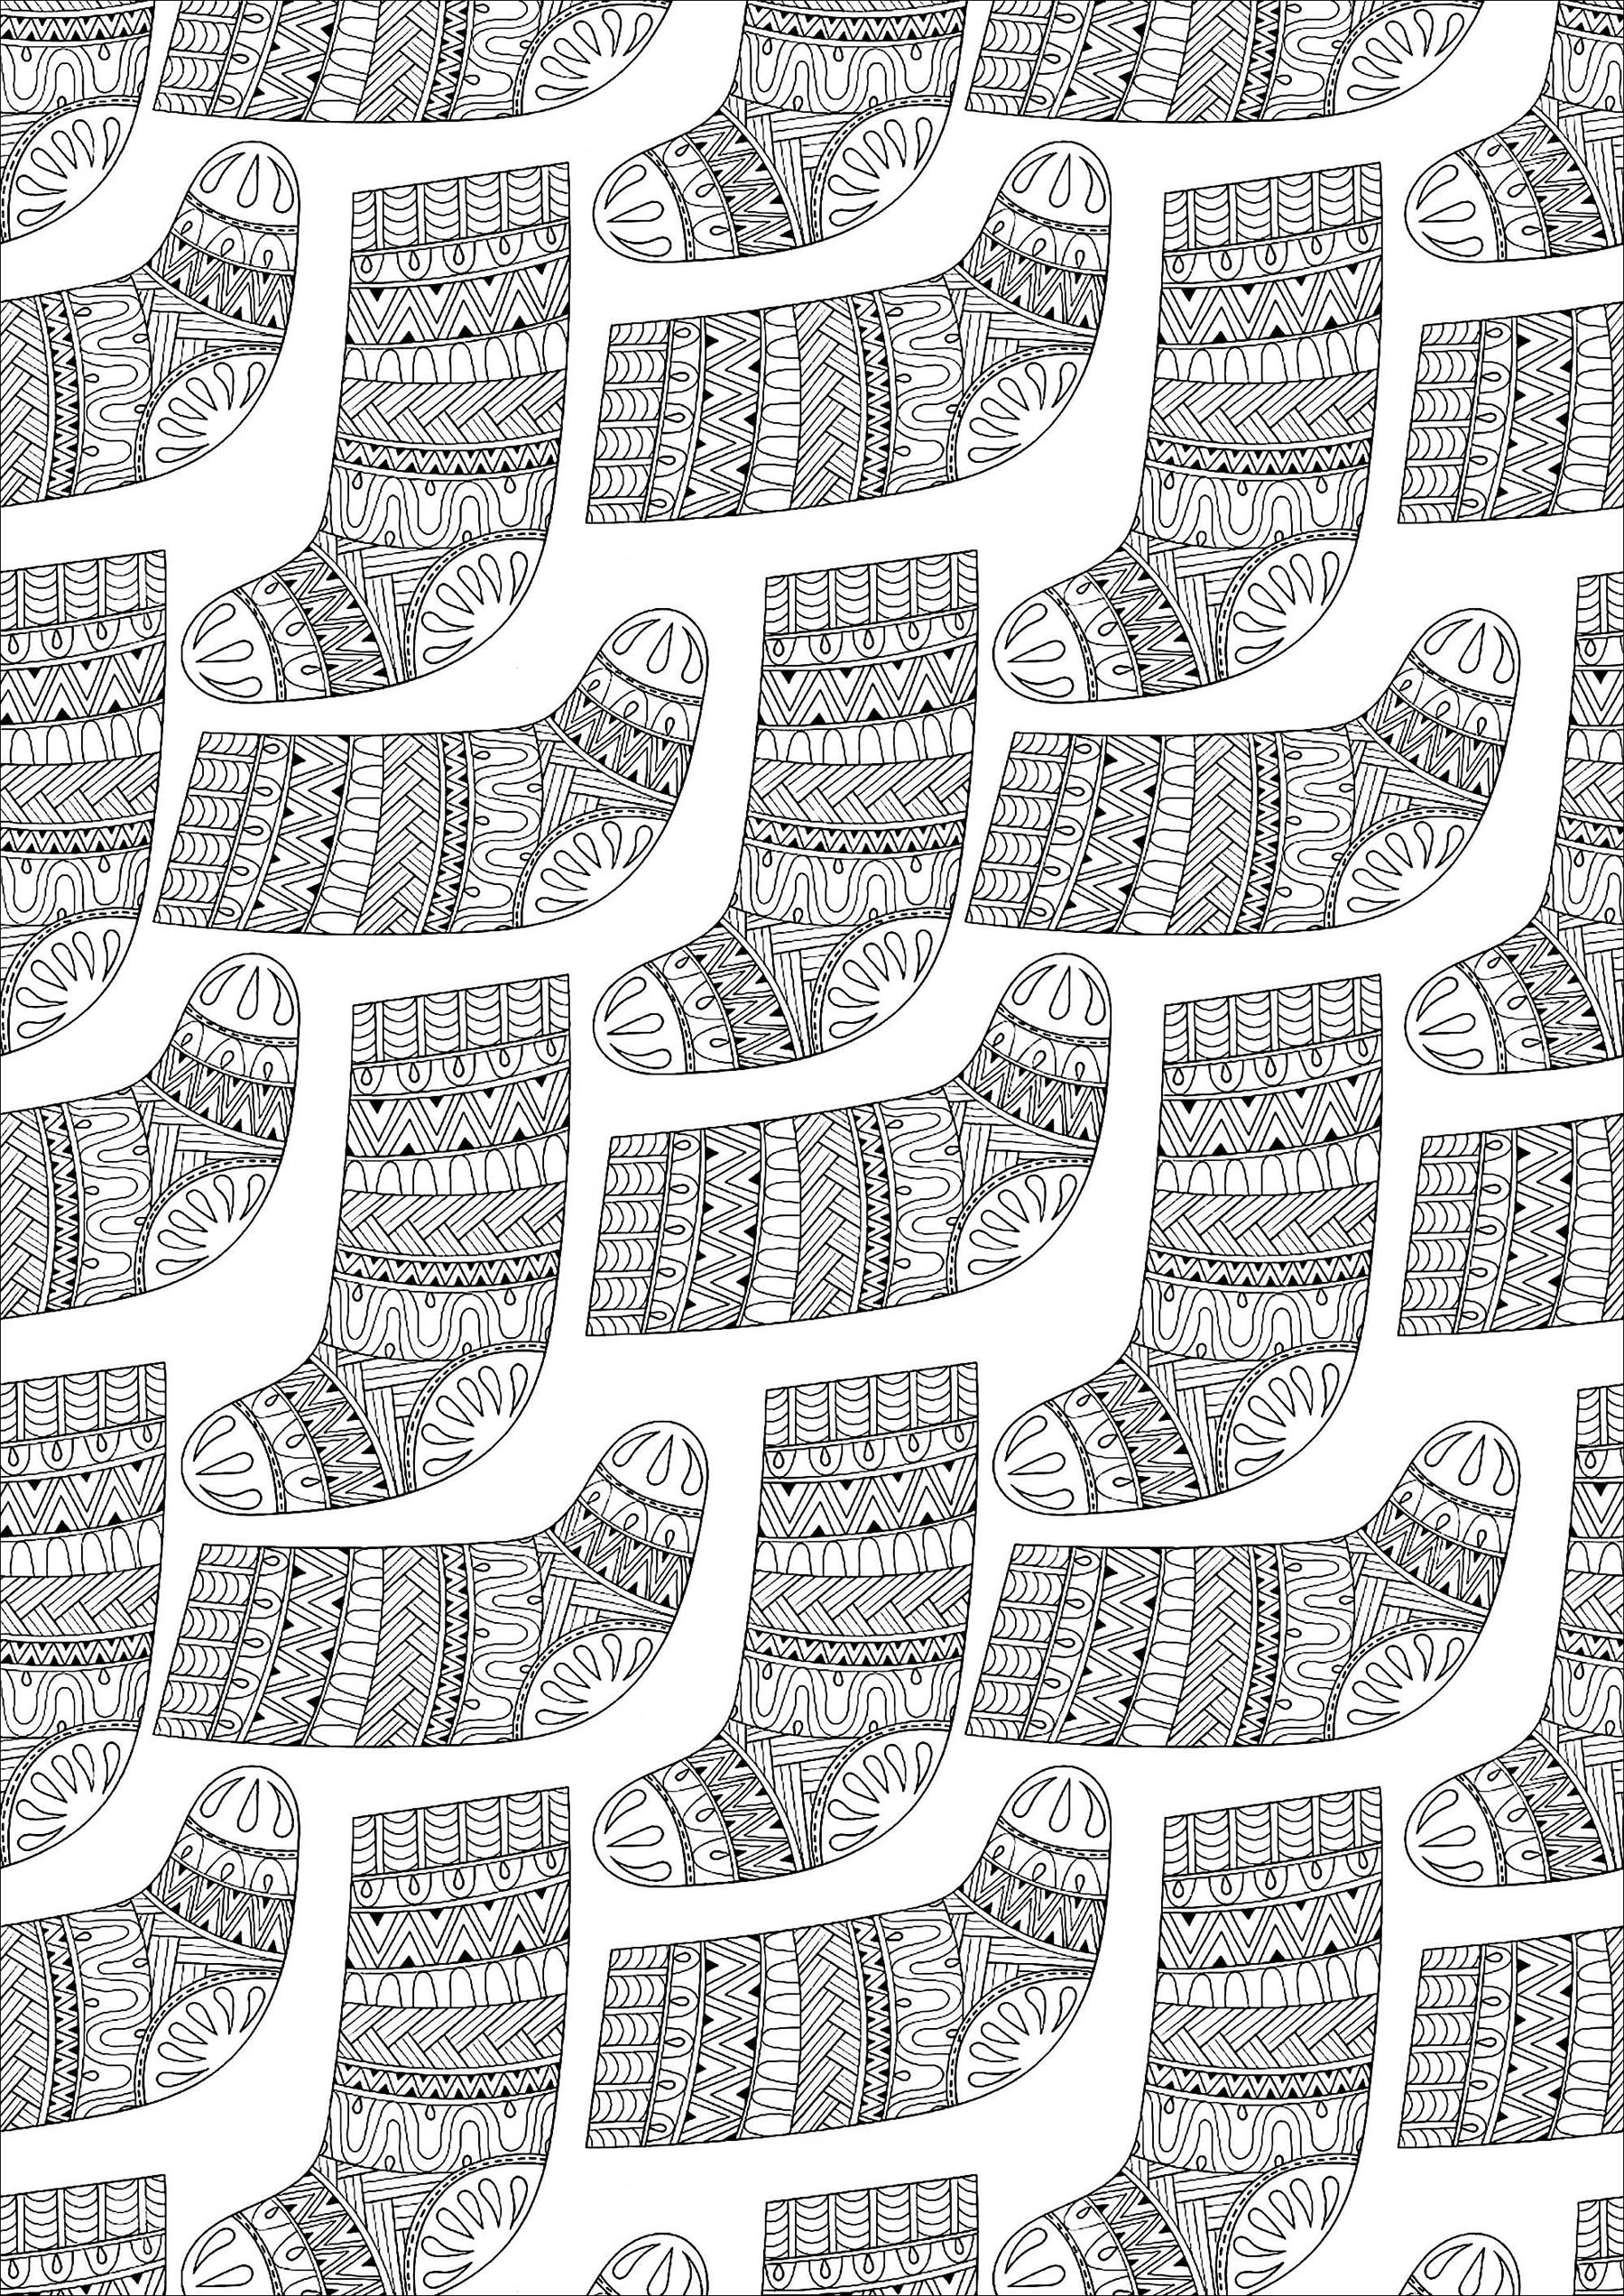 Chaussettes aux motifs variés et harmonieux, Source : 123rf   Artiste : Ipanki